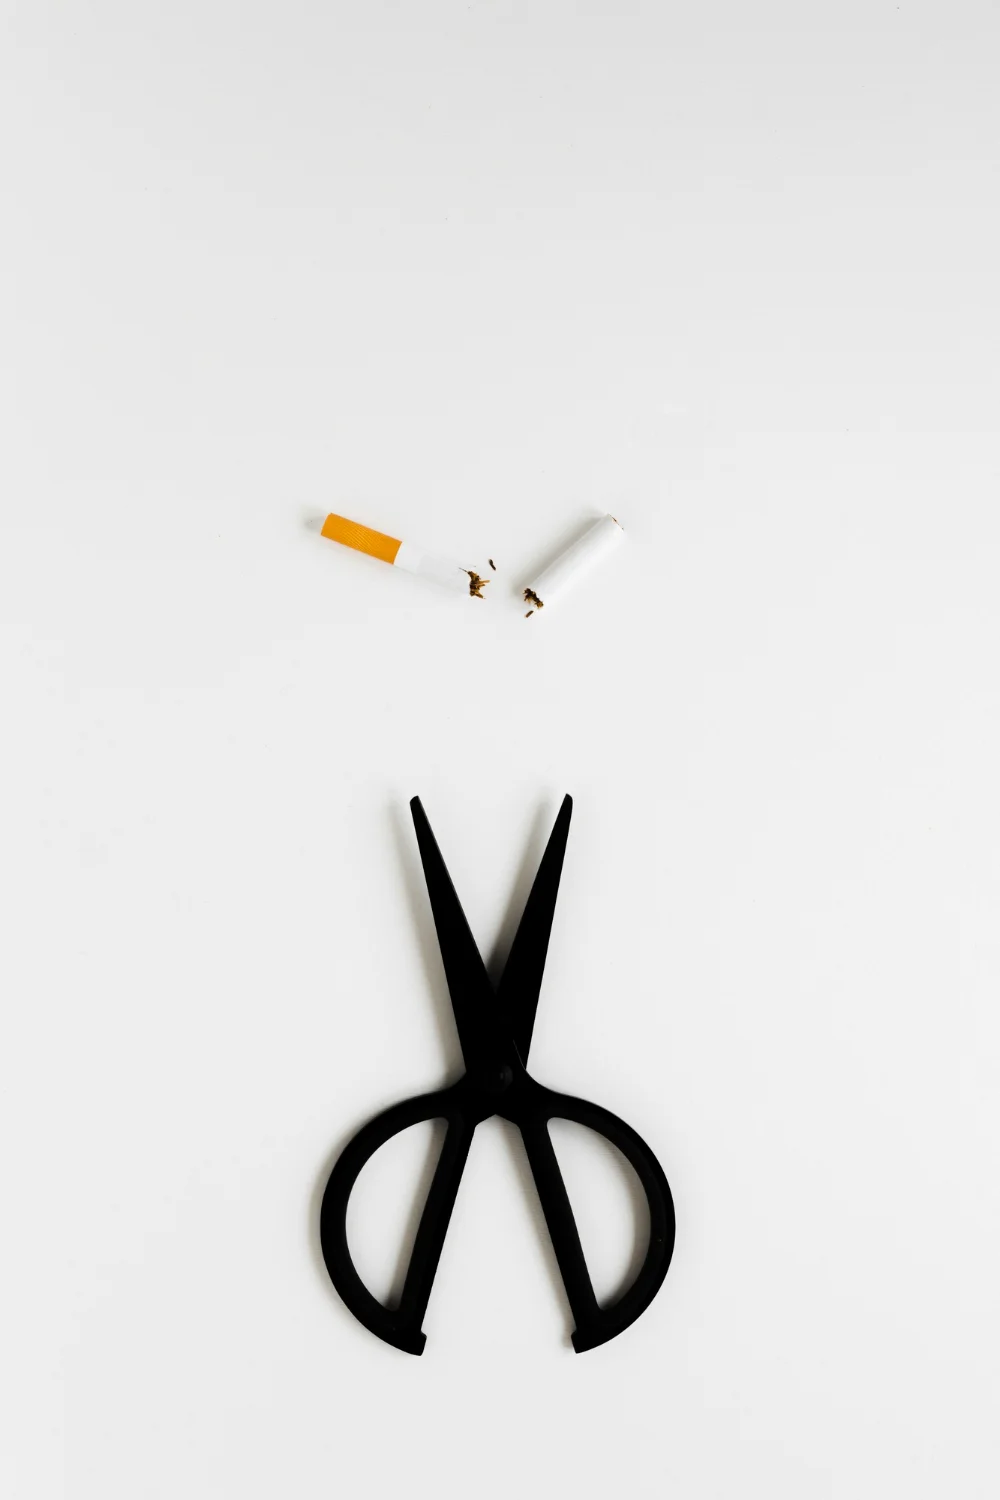 Διακοπή Καπνίσματος με το Ιάτρειο Διακοπής Καπνίσματος - Κάπνισμα: Μύθοι και Πραγματικότητες… Πνευμονολόγος Δρ. Στυλιανός Βιττωράκης, Χανιά.